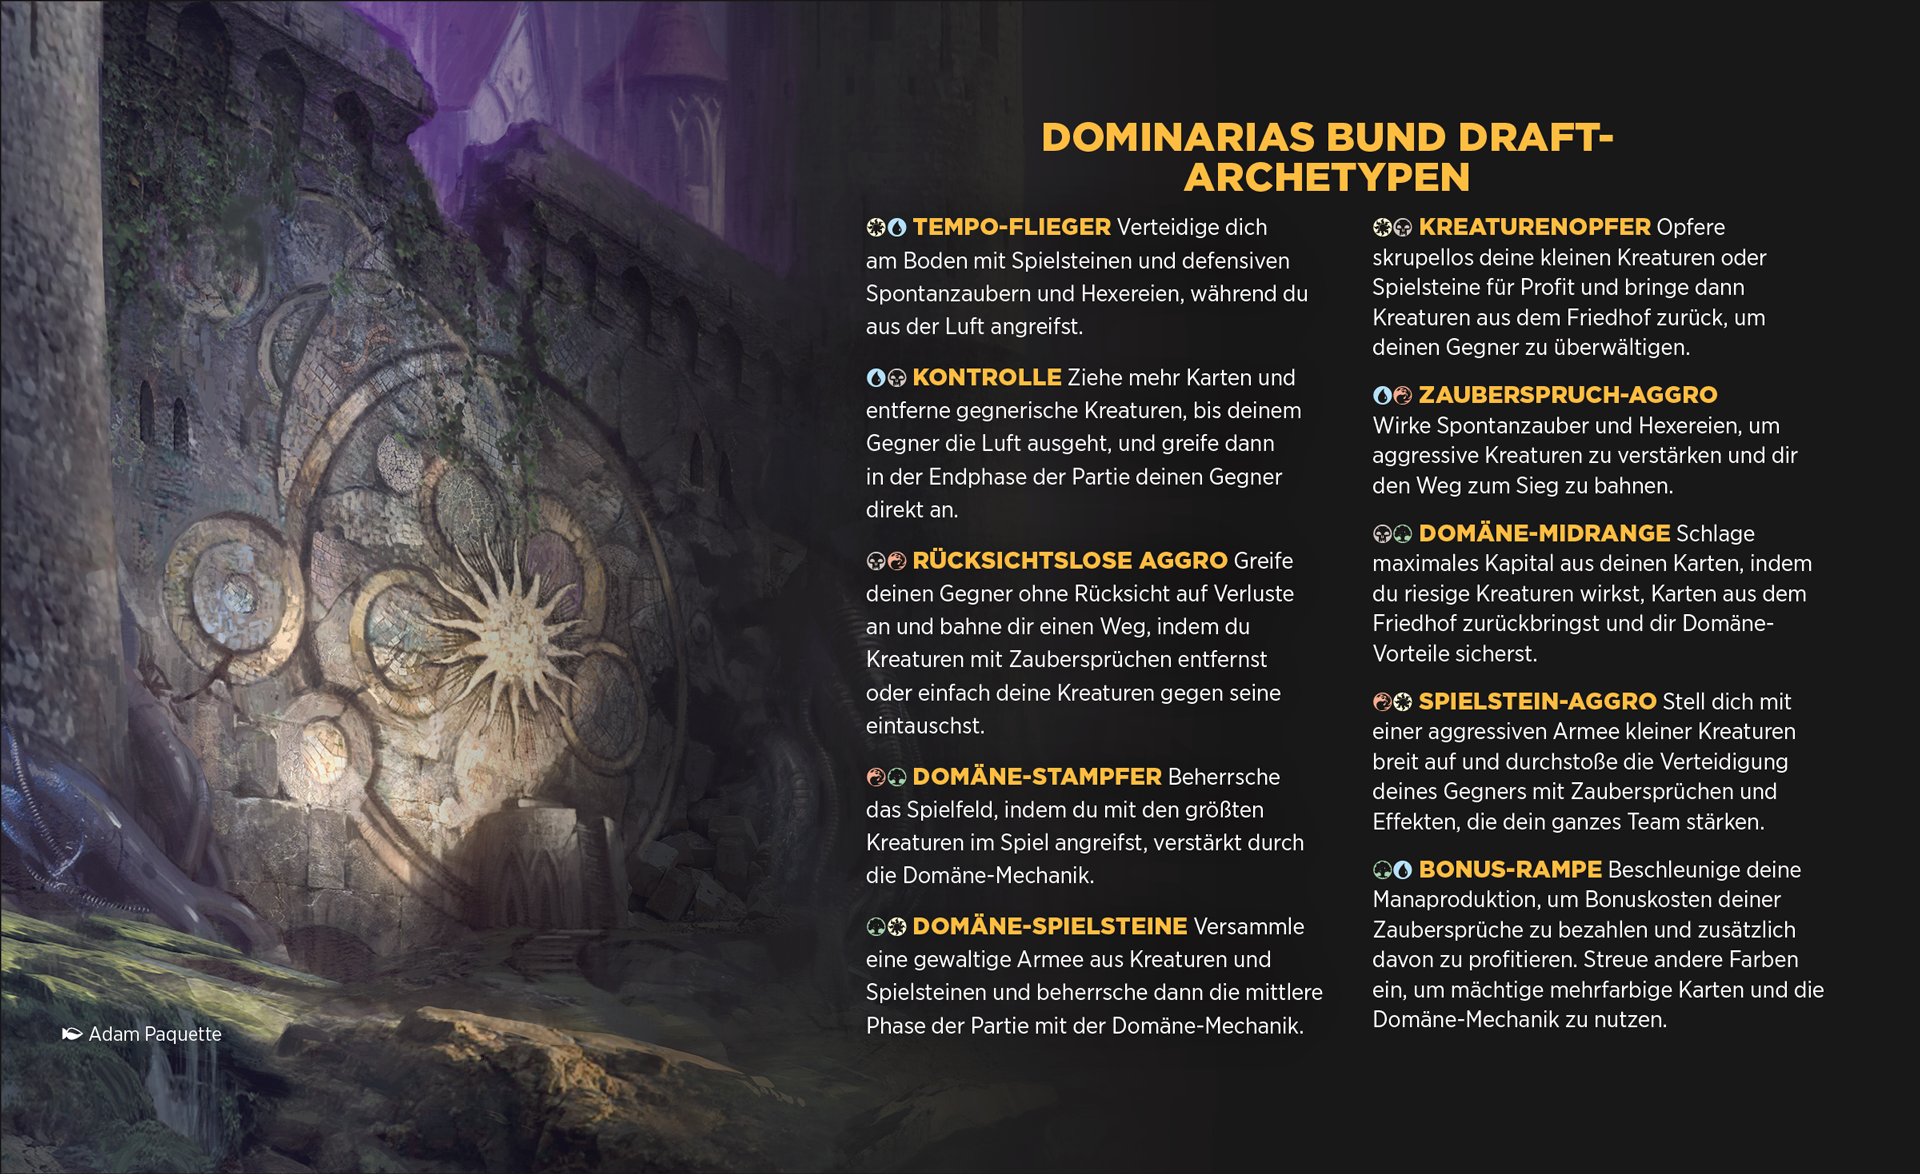 Draft- und Sealed-Archetypen von Dominarias Bund